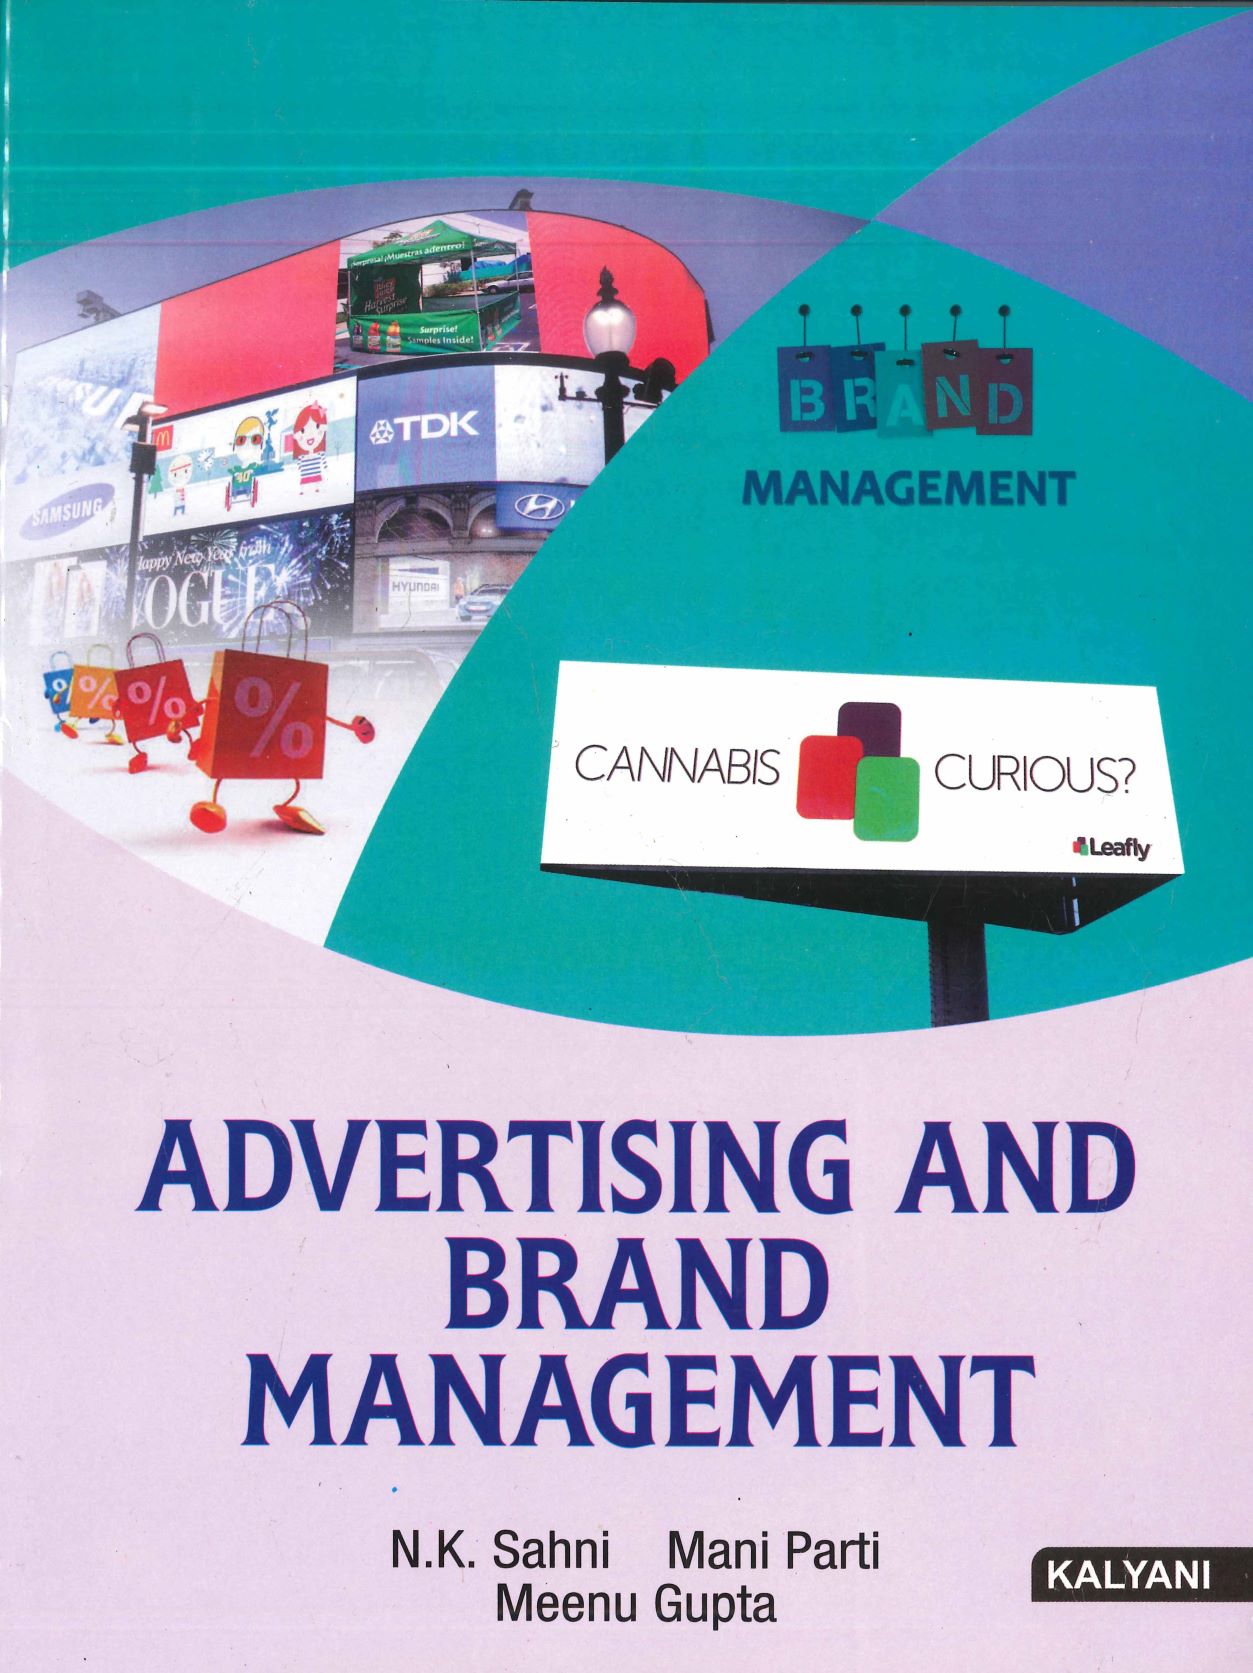 Kalyani Advertising and brand management By N k Sahni, Mani Patri